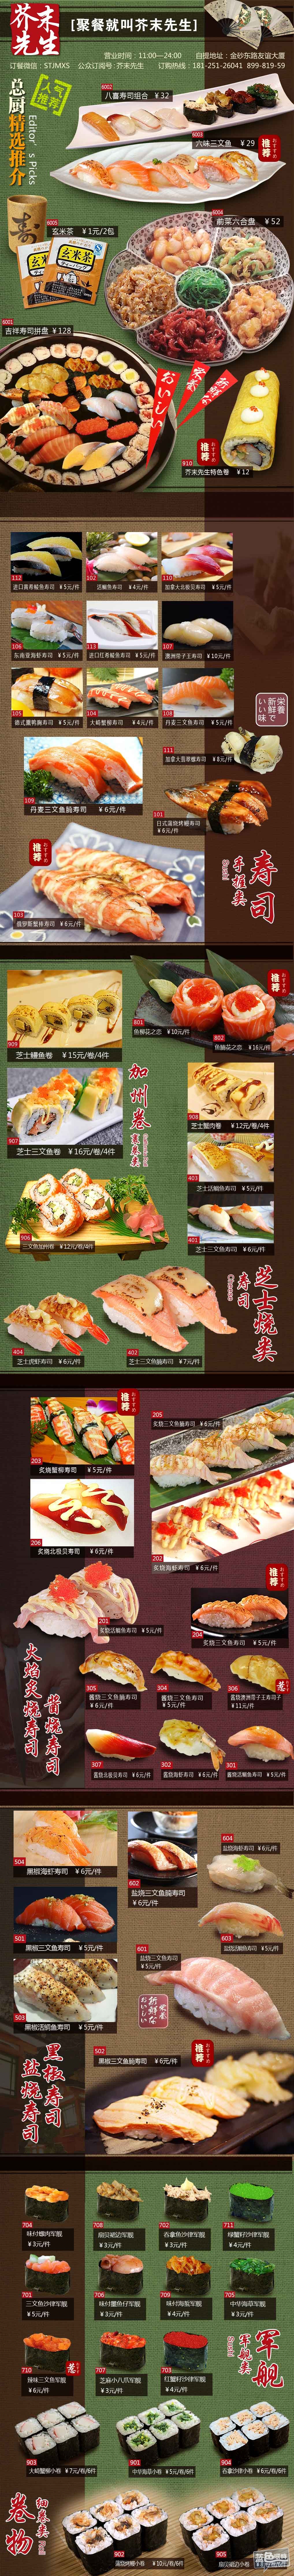 2.菜单-寿司.jpg